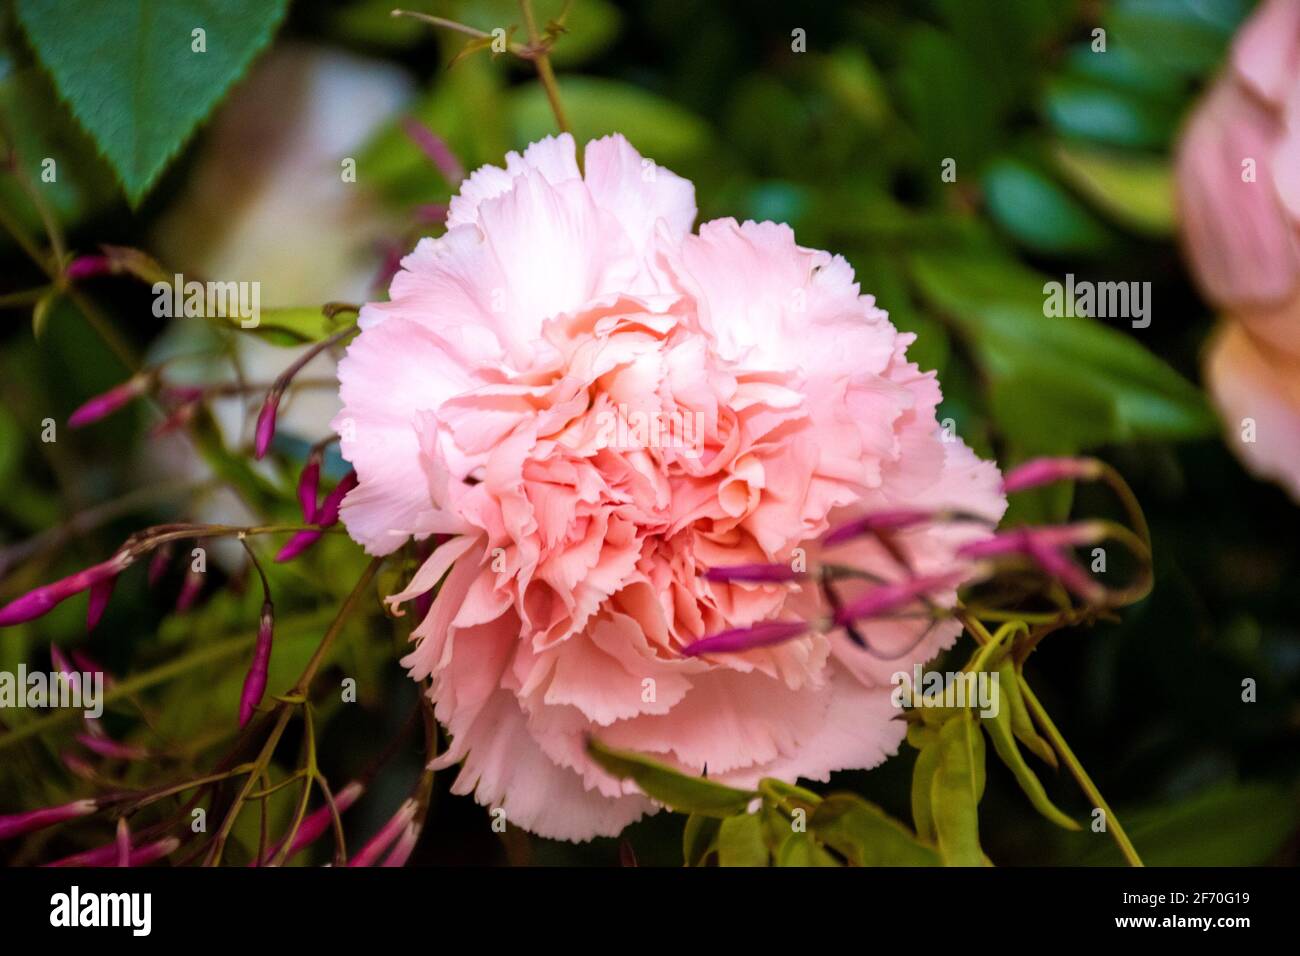 délicate carnation rose pastel avec fond de feuilles vertes Banque D'Images